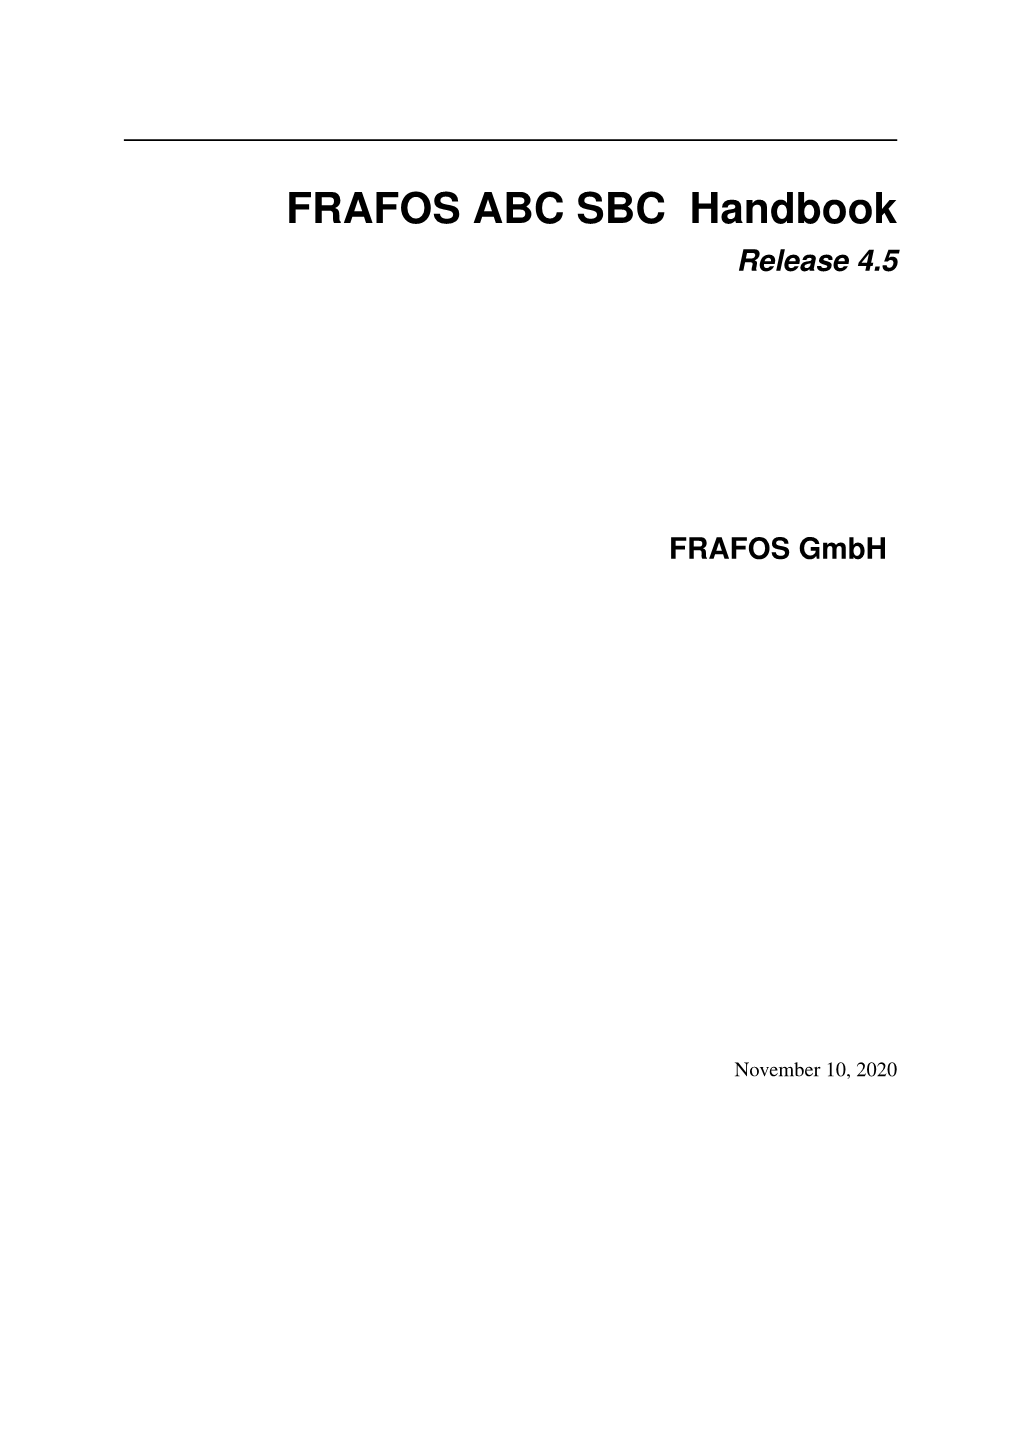 FRAFOS ABC SBC Handbook Release 4.5